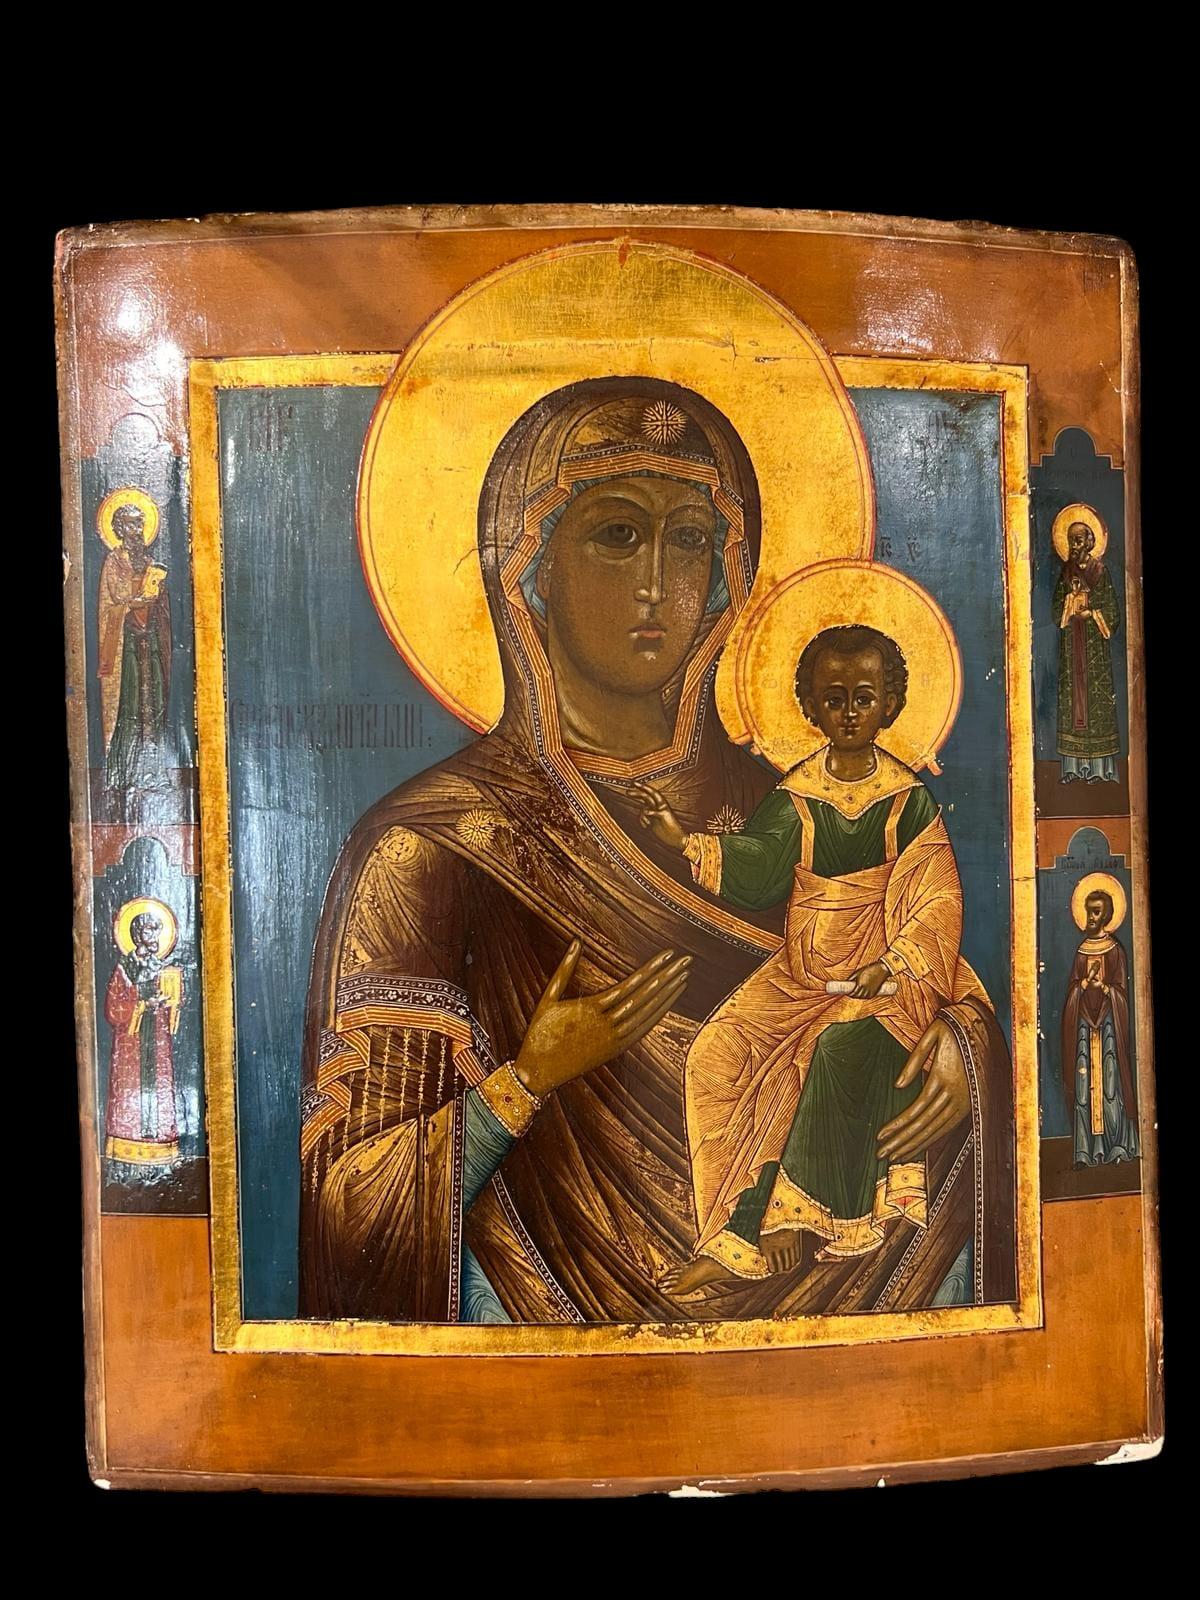 Cette belle icône orthodoxe du milieu du XIXe siècle en Russie représente la Mère de Dieu Tikhvinskaia. Il est originaire de la ville de Townes, située à 335 kilomètres au nord-est de Moscou.

Selon la légende, une icône de la Vierge Marie et de